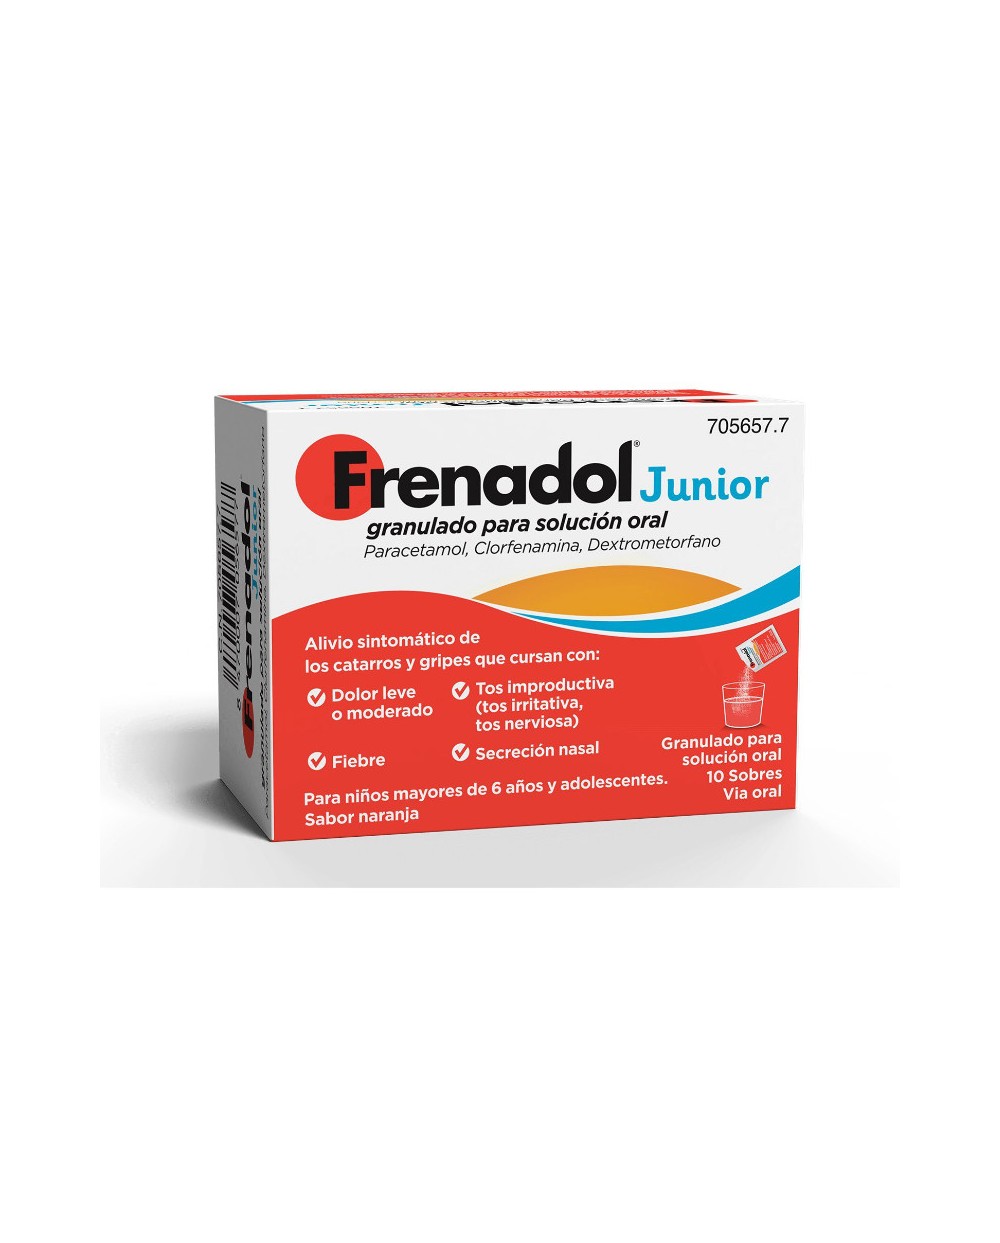 Frenadol Junior
El primer multisintomático de Frenadol para niños